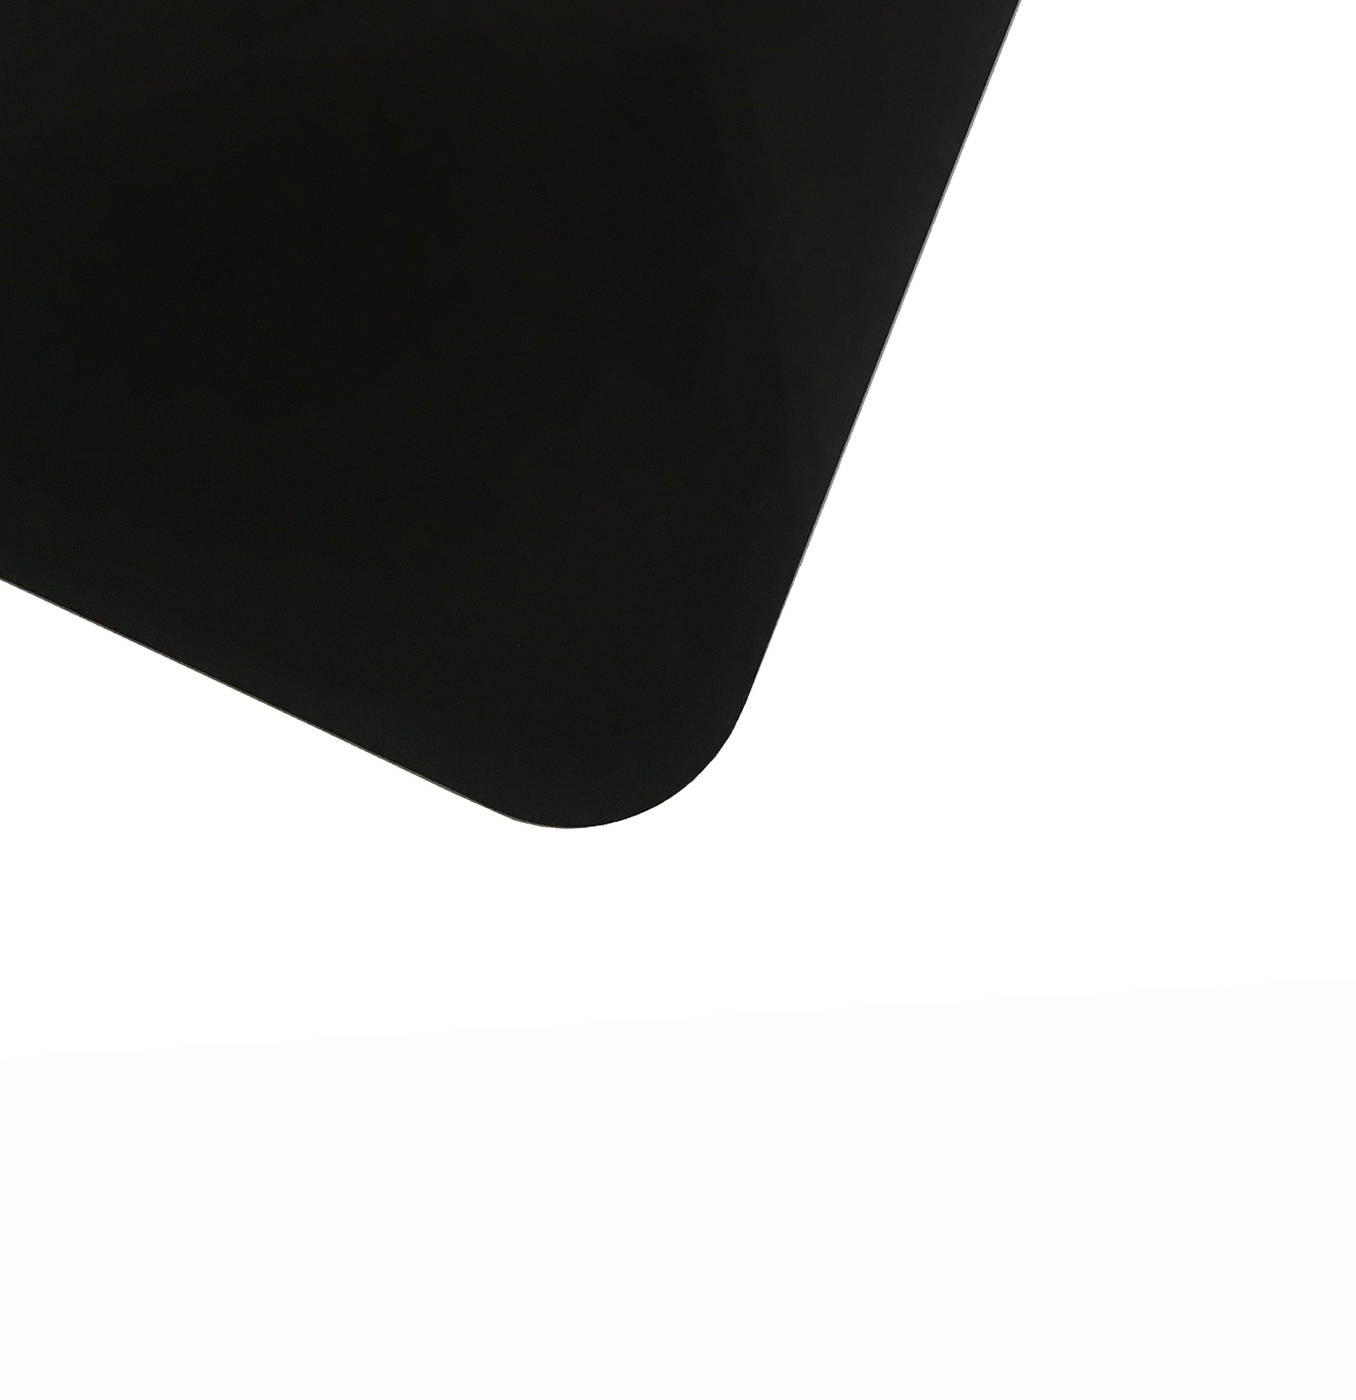 Планшет для пленэра из оргстекла 3 мм, под лист размера 40х60 см, цвет черный планшет минимед для предметных стекол на 20 мест